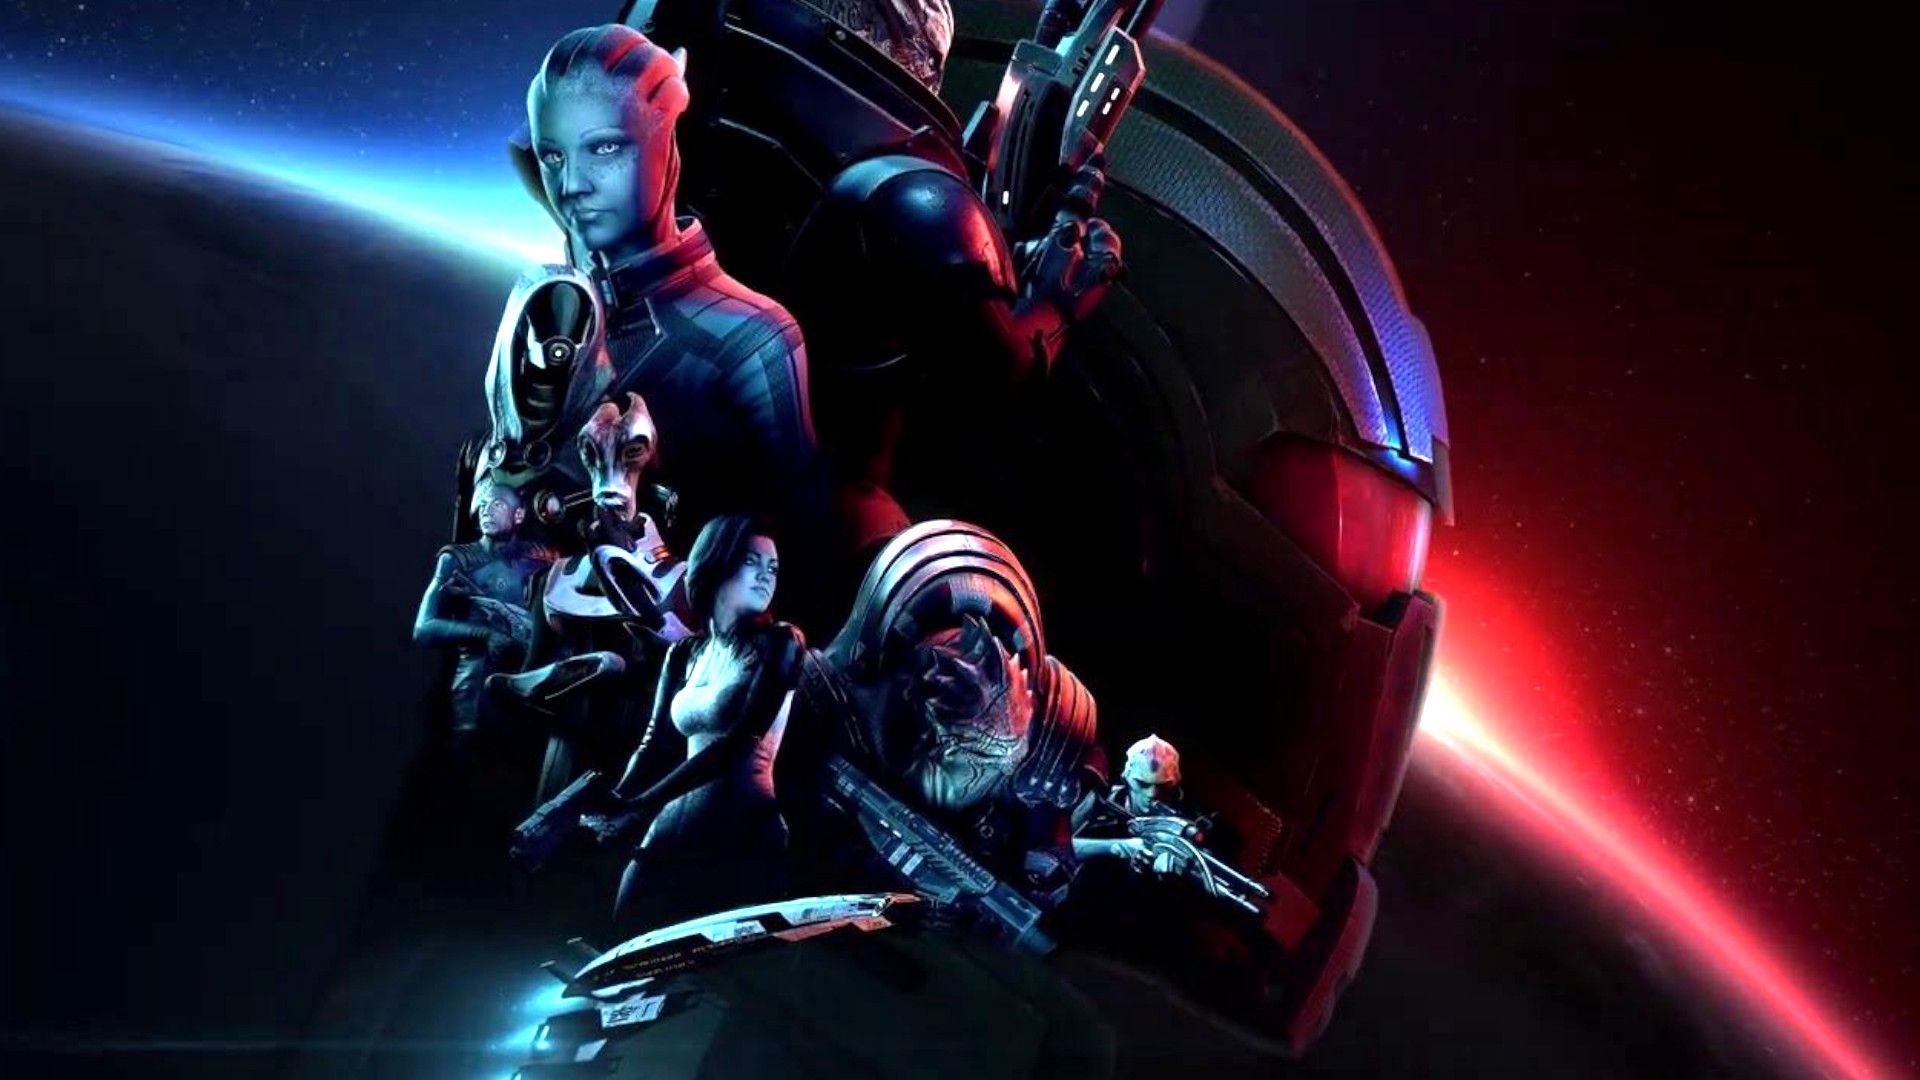 Mass Effect: Legendary Edition Wallpaper Free Mass Effect: Legendary Edition Background